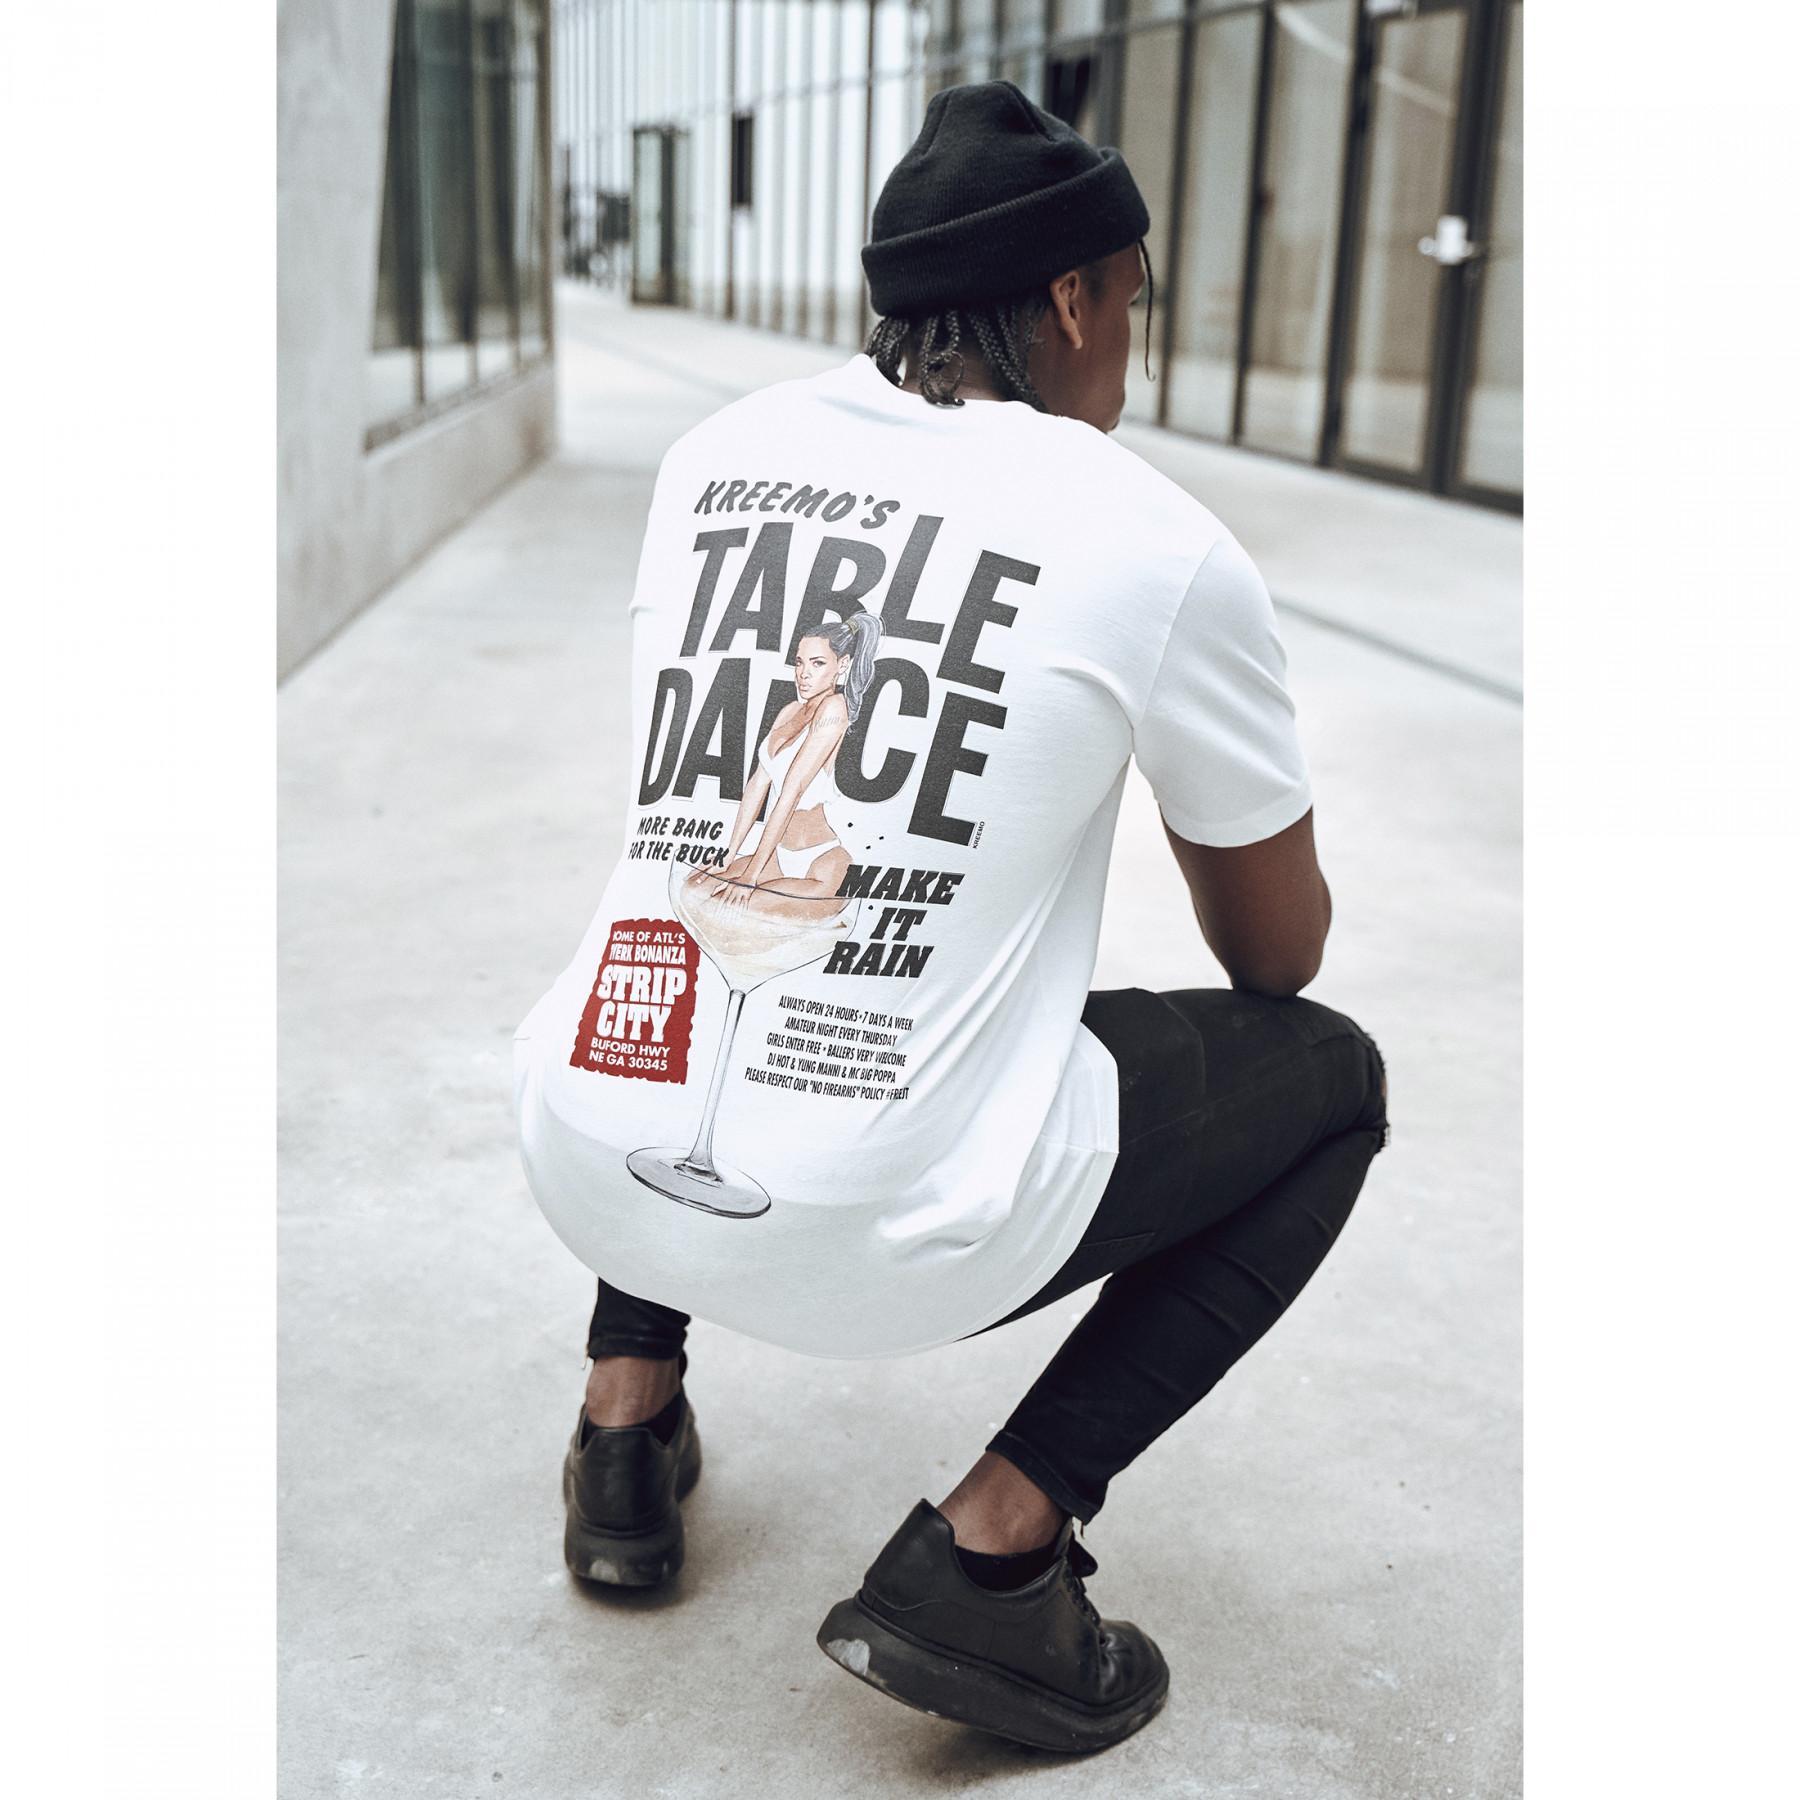 Camiseta Mister Tee tabledance